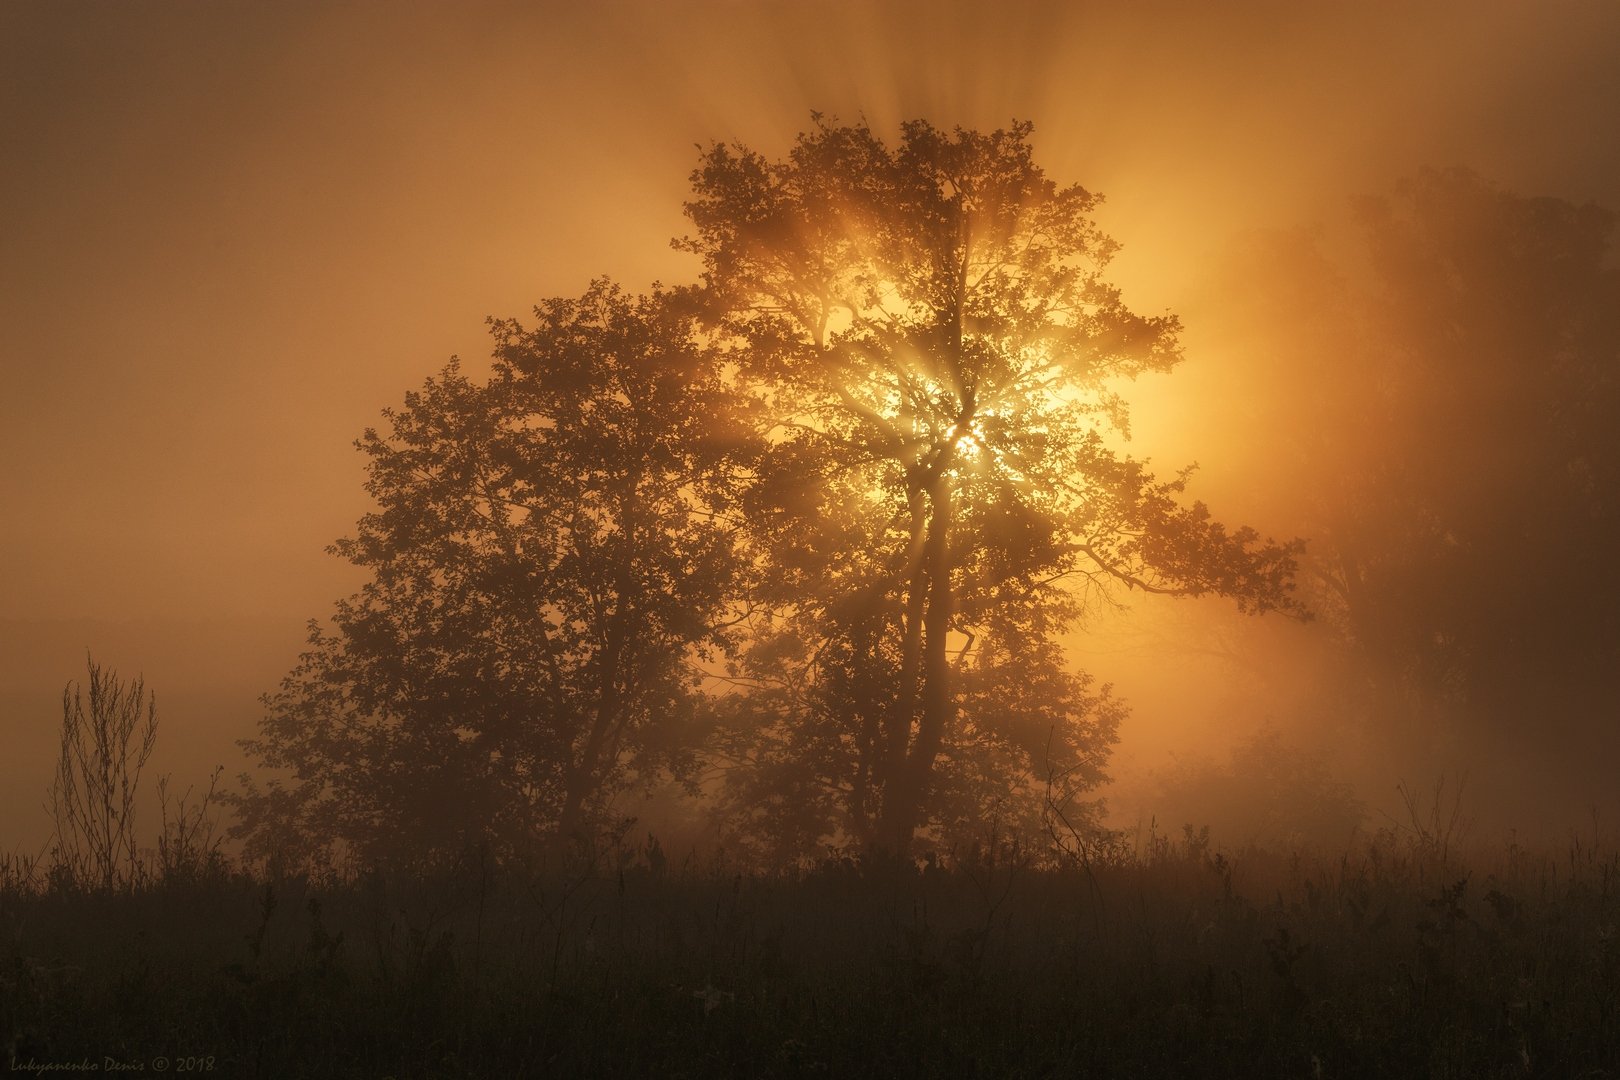 2018, россия, калужская область, весна, май, утро, туман, деревья, лучи, солнце, Денис Лукьяненко